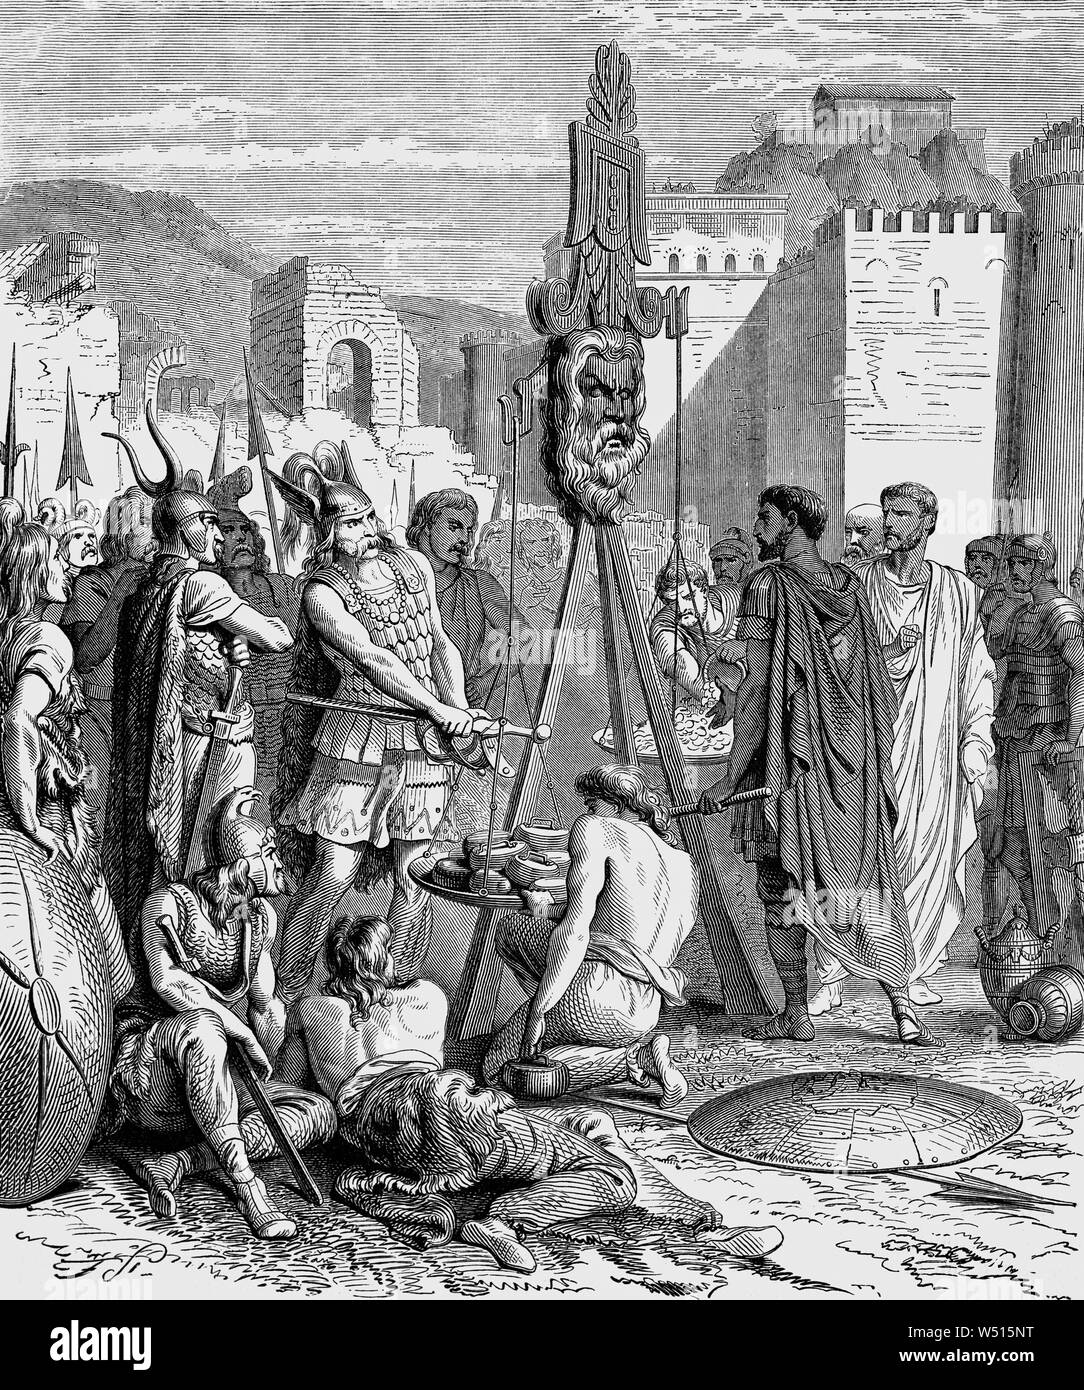 Brennus (oder Brennos) war ein Häuptling der Senones in Rom. Er besiegte die Römer in der Schlacht an der Allia (18. Juli 390 v. Chr.) im Jahr 387 v. Chr., führte eine Armee von cisalpine Gallier in ihren Angriff auf Rom und die meisten der Stadt gefangen, es Holding für mehrere Monate. Brennus's Sack von Rom war das einzige Mal in 800 Jahren ist die Stadt durch ein nicht besetzt war - Römische Armee vor dem Fall der Stadt auf die Westgoten in 410 AD. Stockfoto